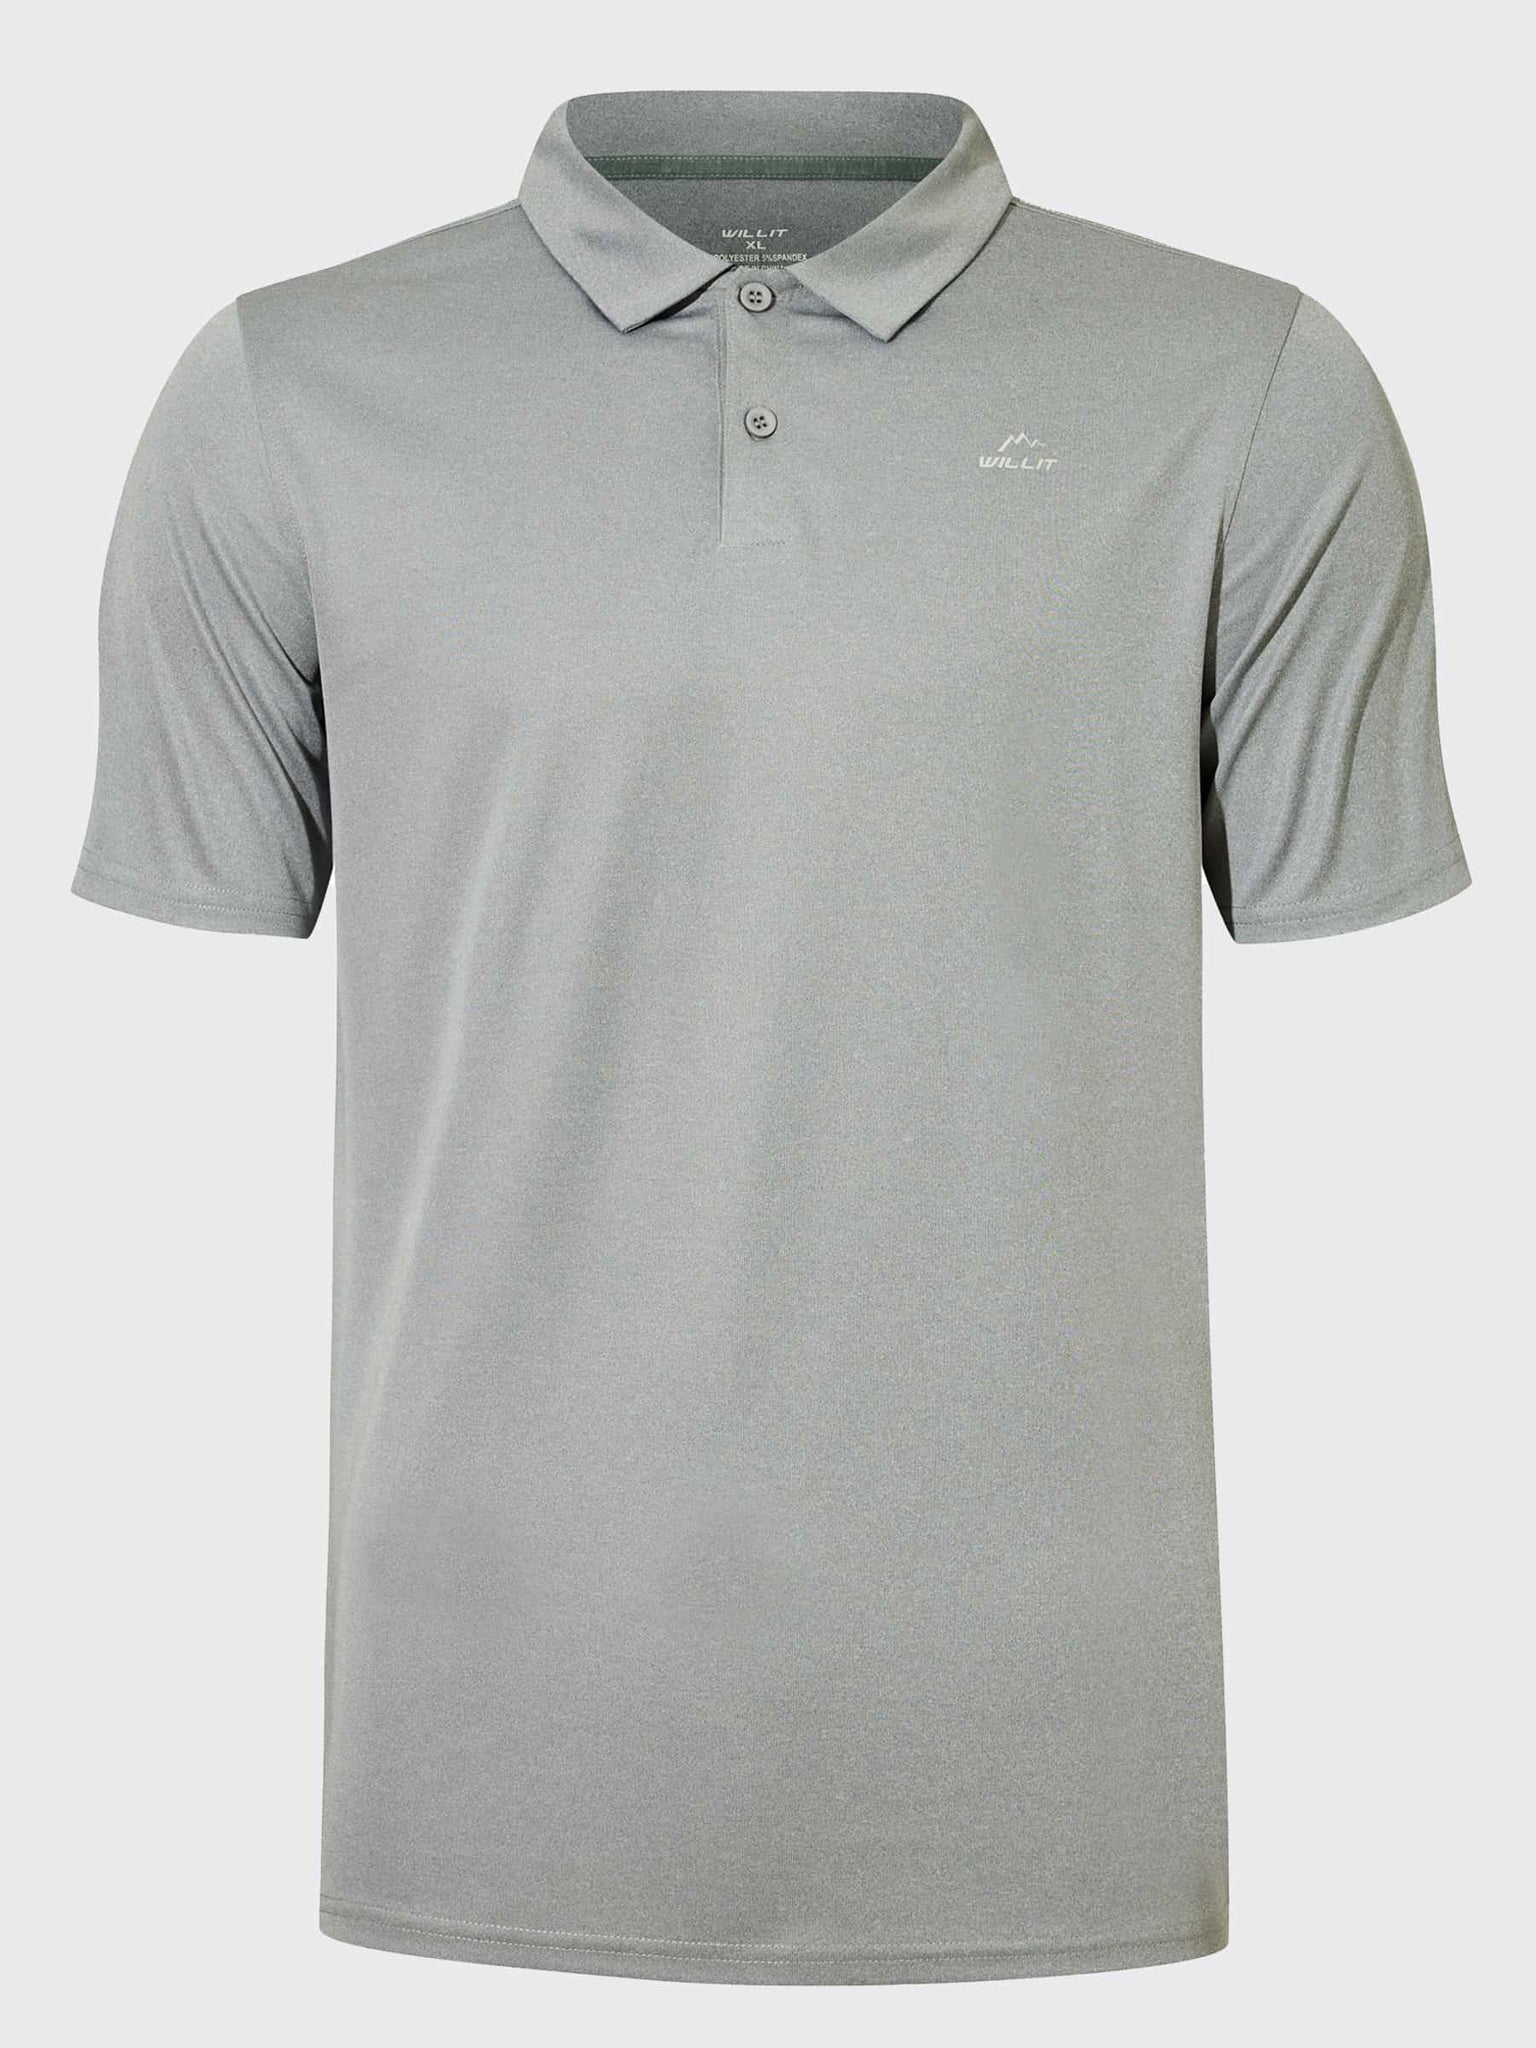 Youth Golf Polo Sun Shirts_Gray_laydown2